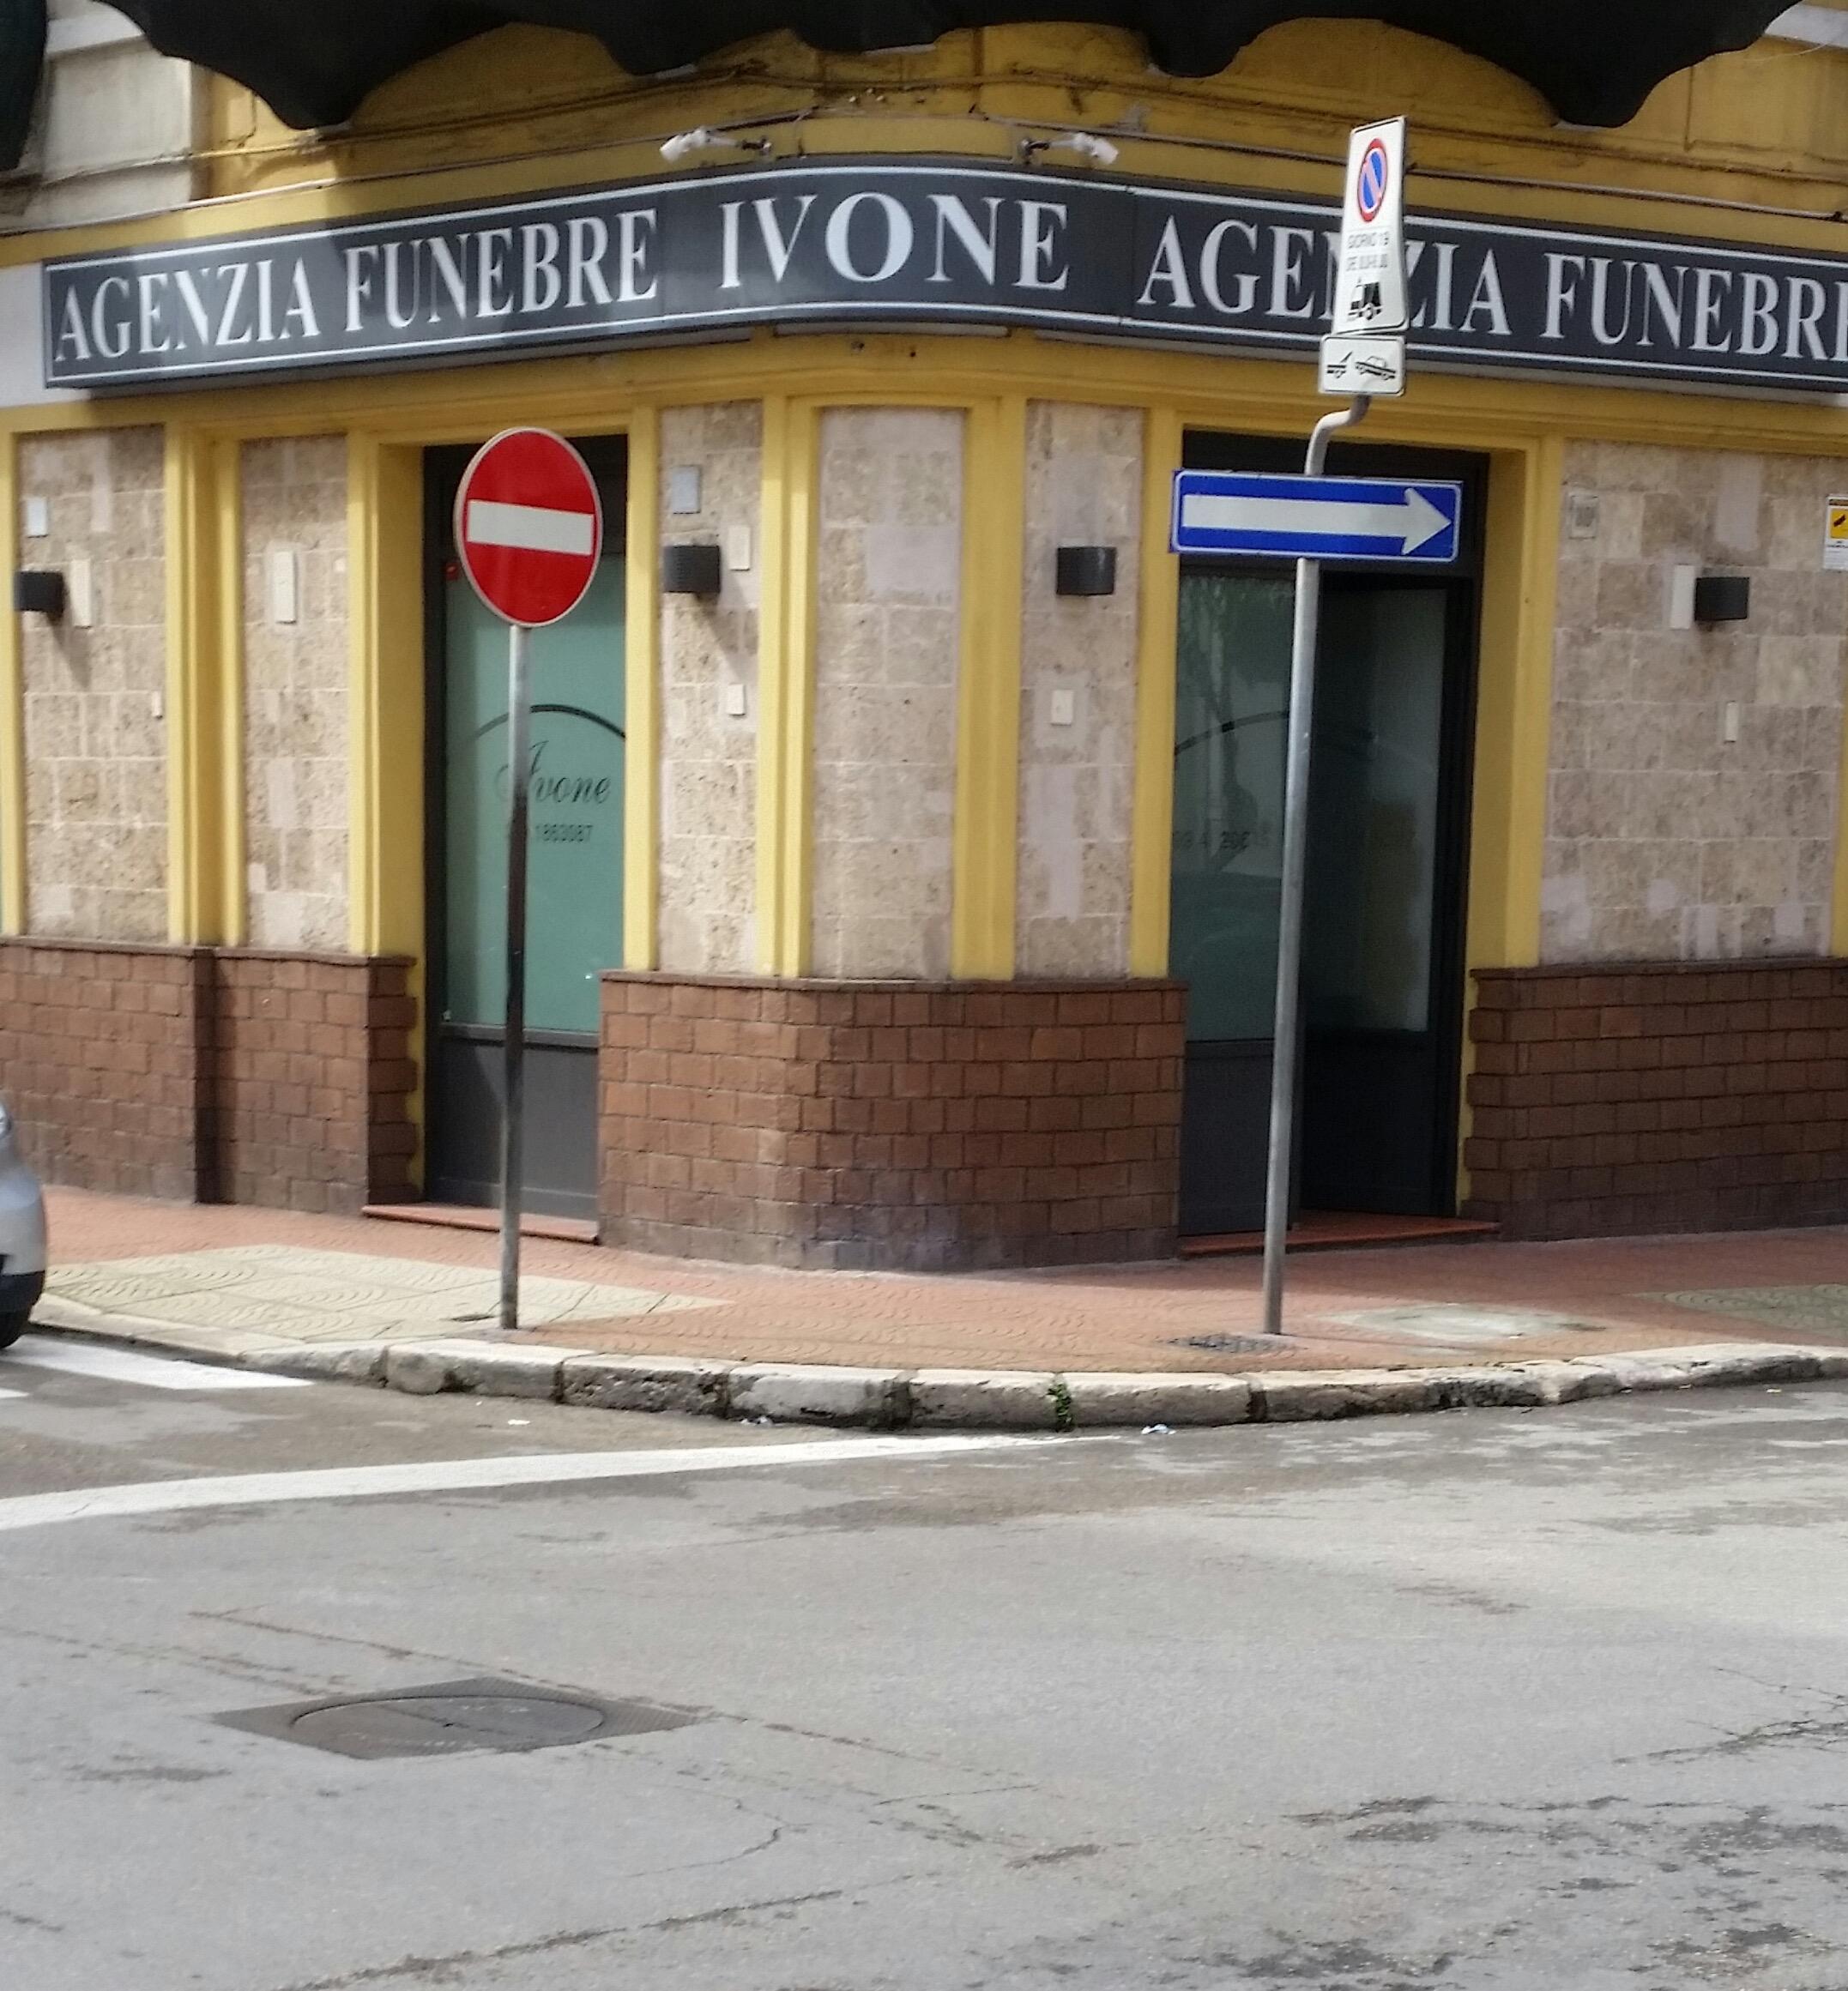 Agenzia Funebre Ivone ‹ Trova Aziende - Cerca le Aziende ...